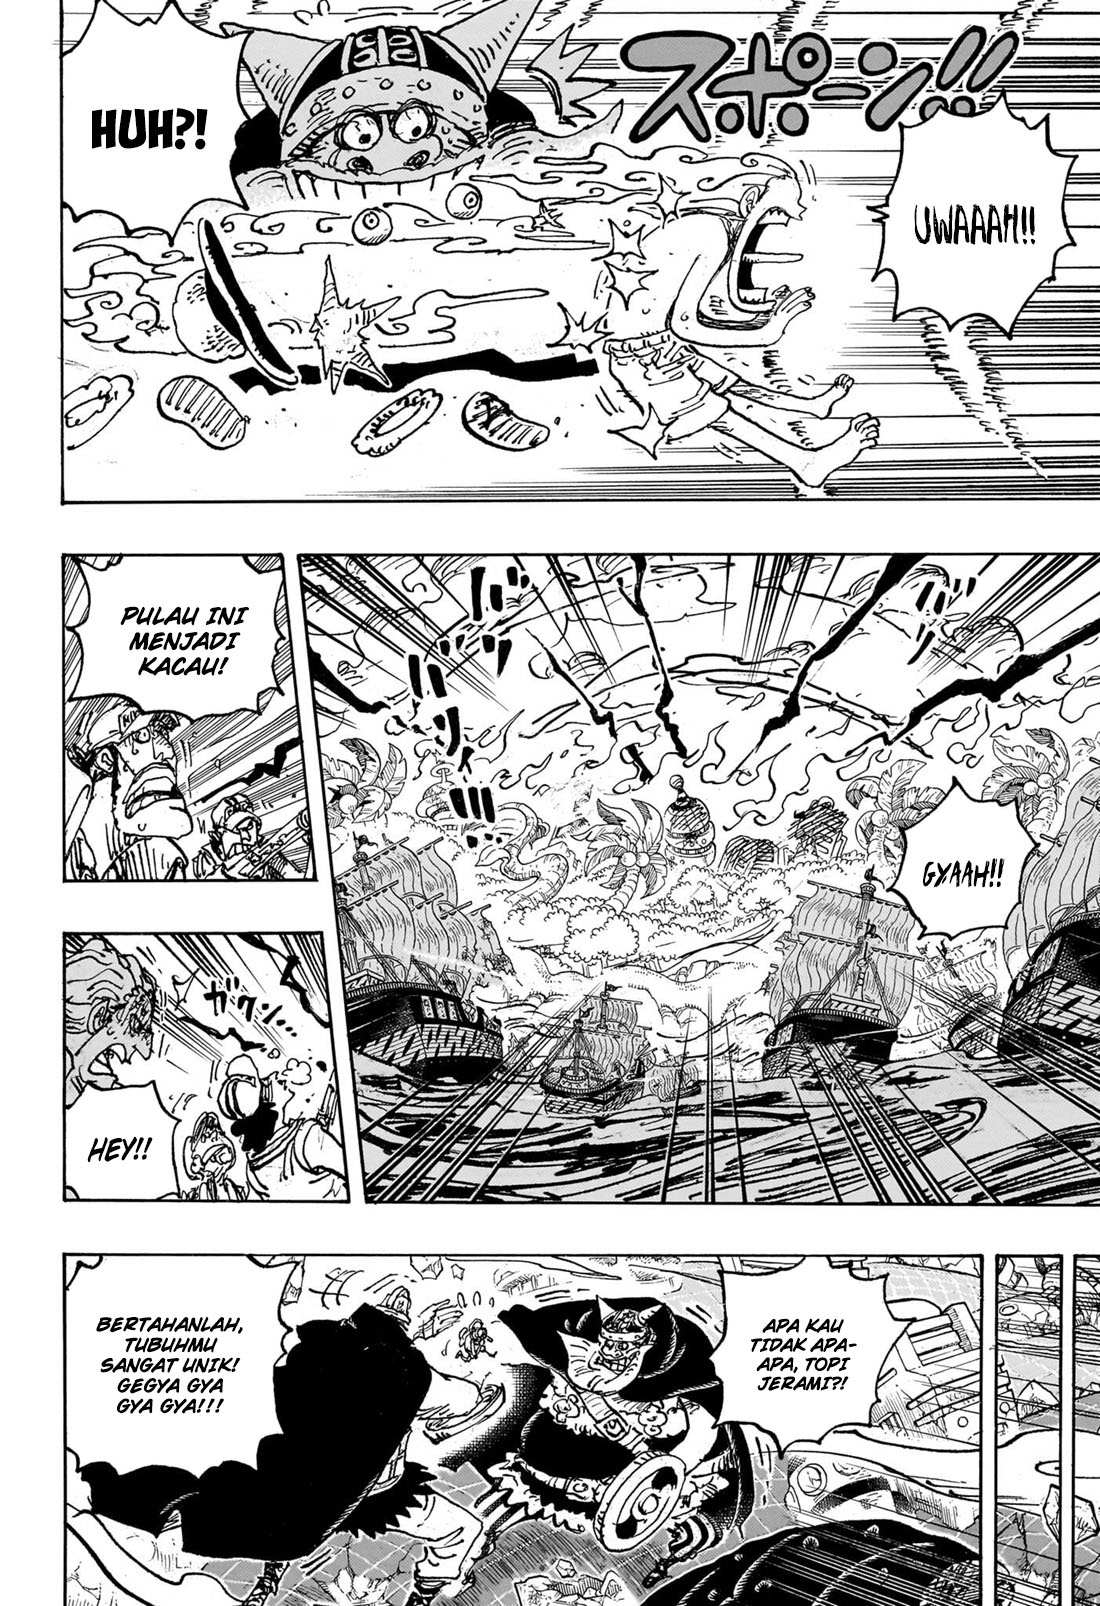 Baca manga komik One Piece Berwarna Bahasa Indonesia HD Chapter 1110